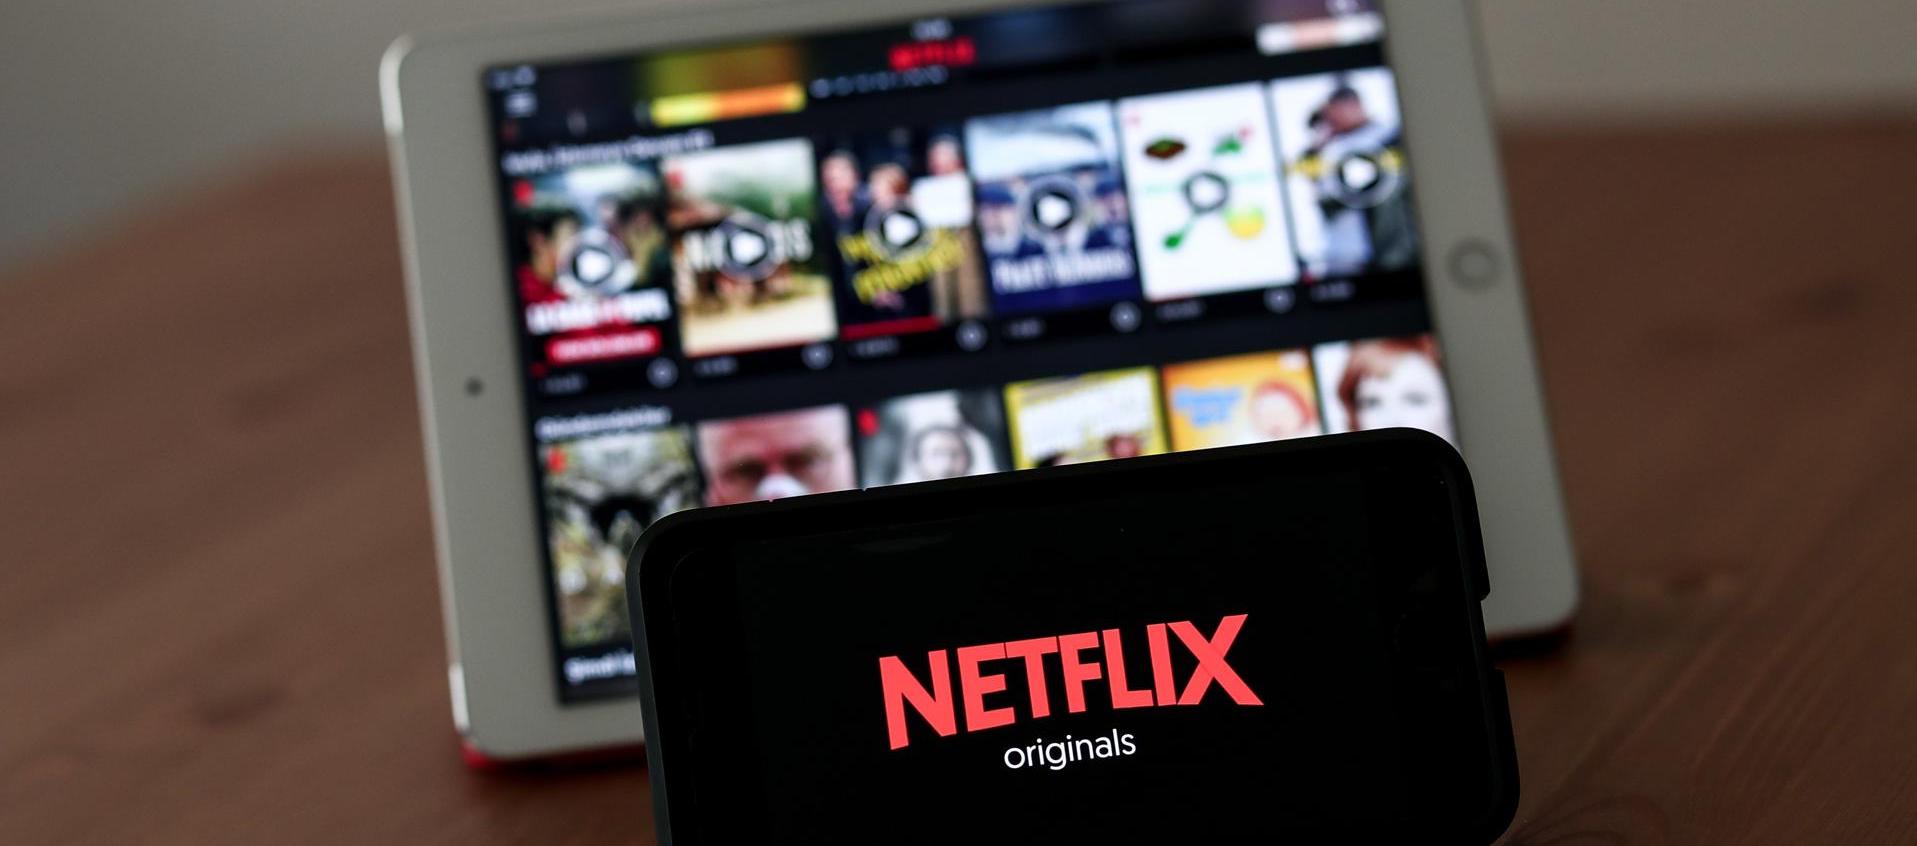 El plan básico en Canadá que cobra Netflix es de 7,43 dólares, sin publicidad